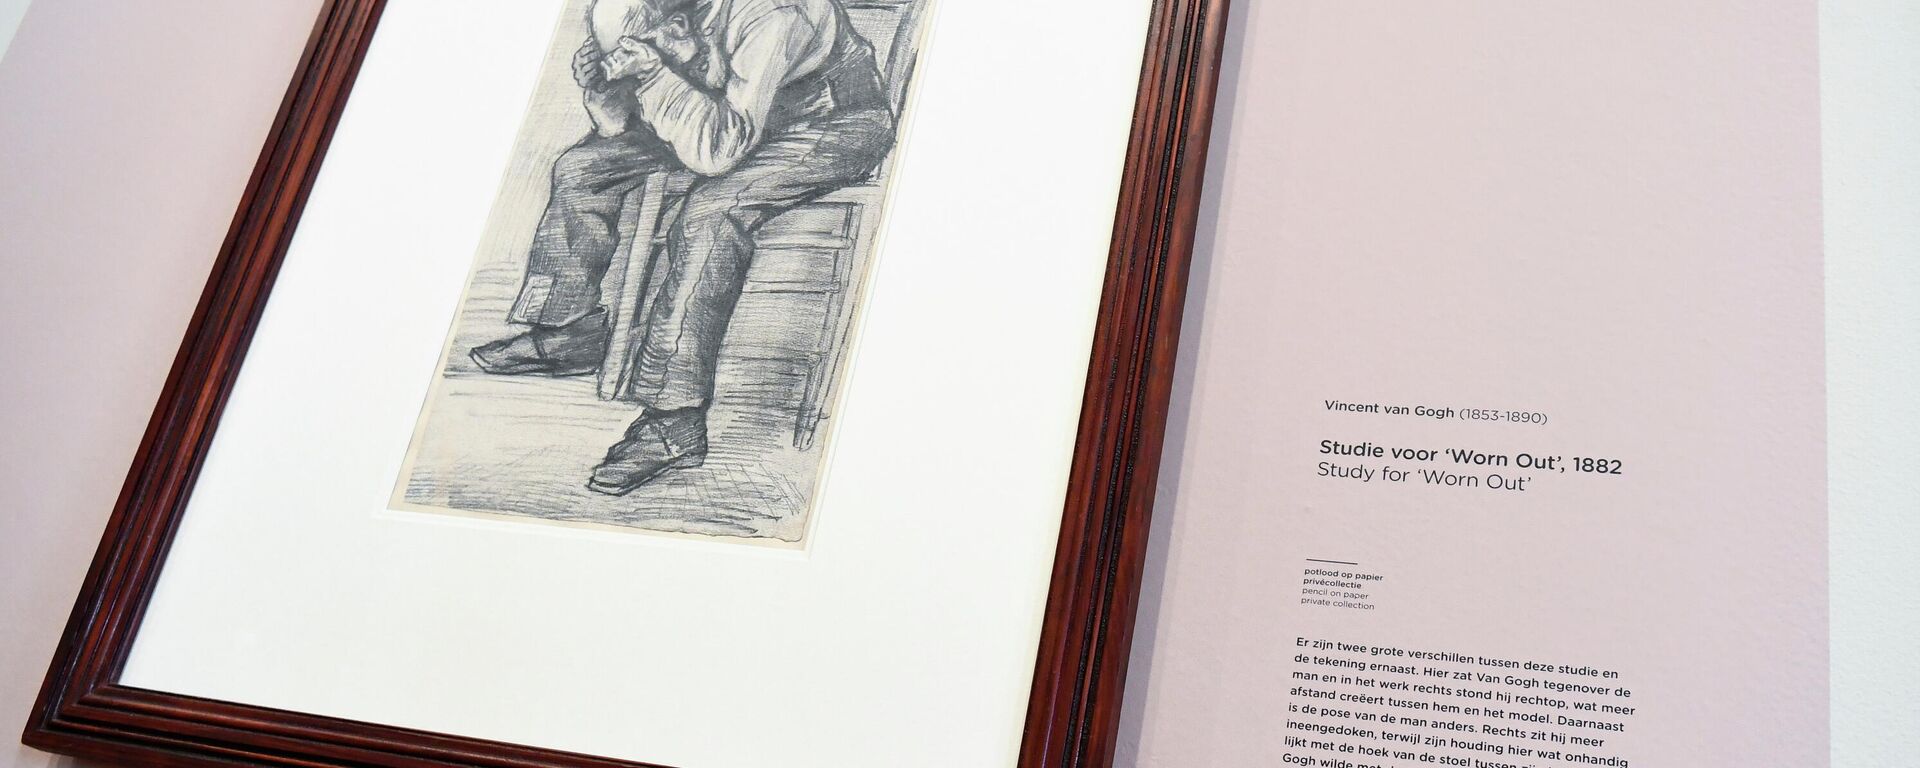 Dünyaca ünlü Hollandalı ressam Vincent Van Gogh'a ait kara kalem çalışması, Hollanda’nın başkenti Amsterdam’da ilk kez sergilendi. - Sputnik Türkiye, 1920, 17.09.2021